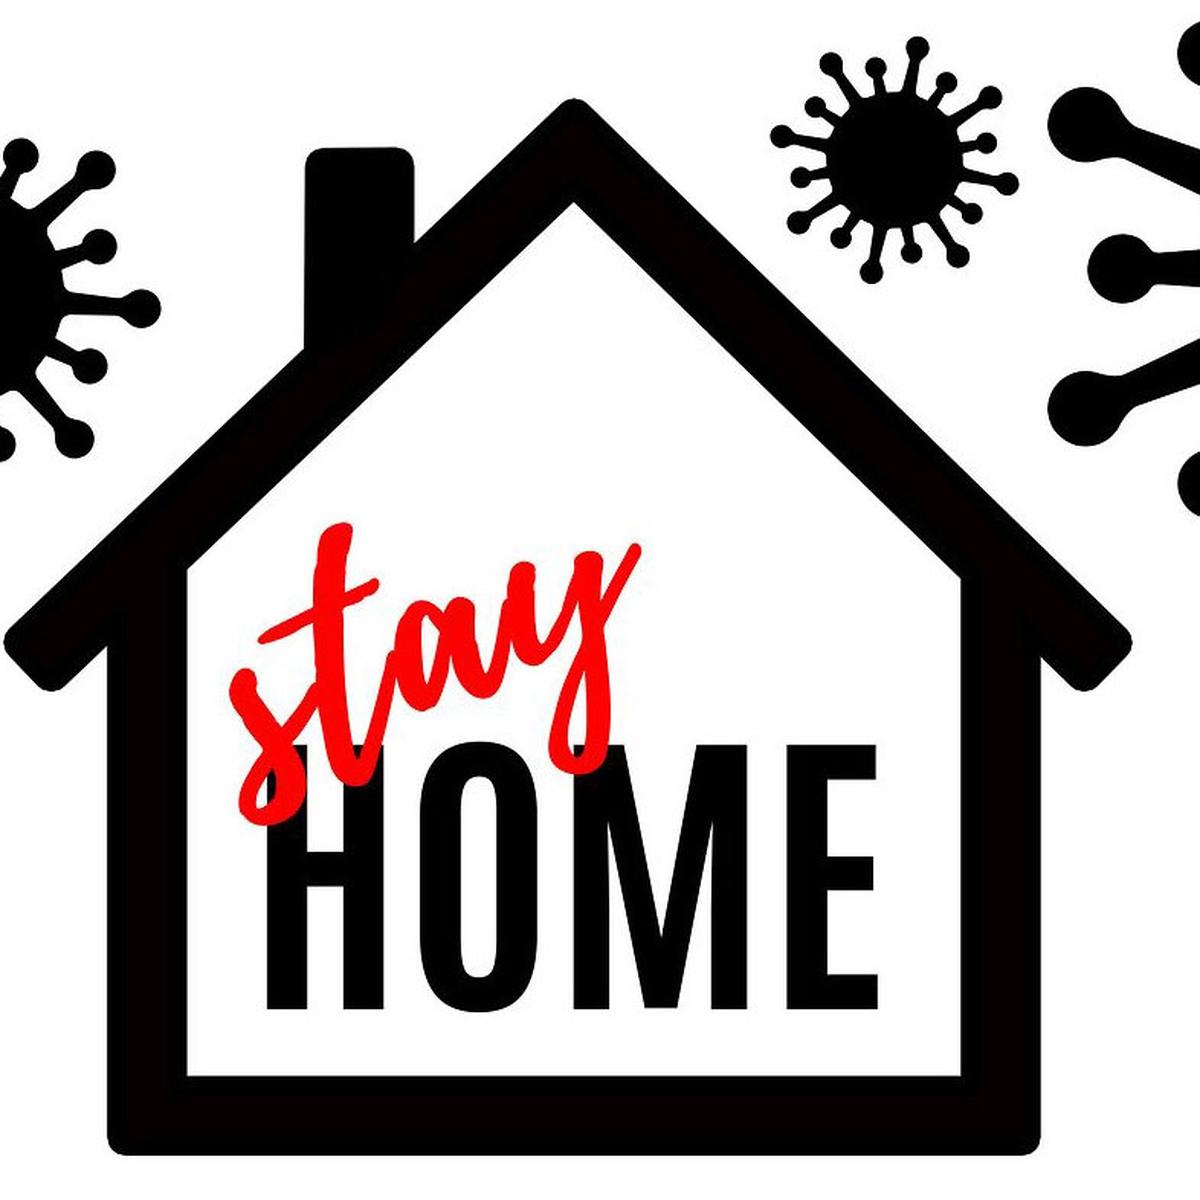 6 Pertanyaan yang Sering Dilontarkan Seputar Stay at Home saat Pandemi  Virus Corona - Ragam Bola.com